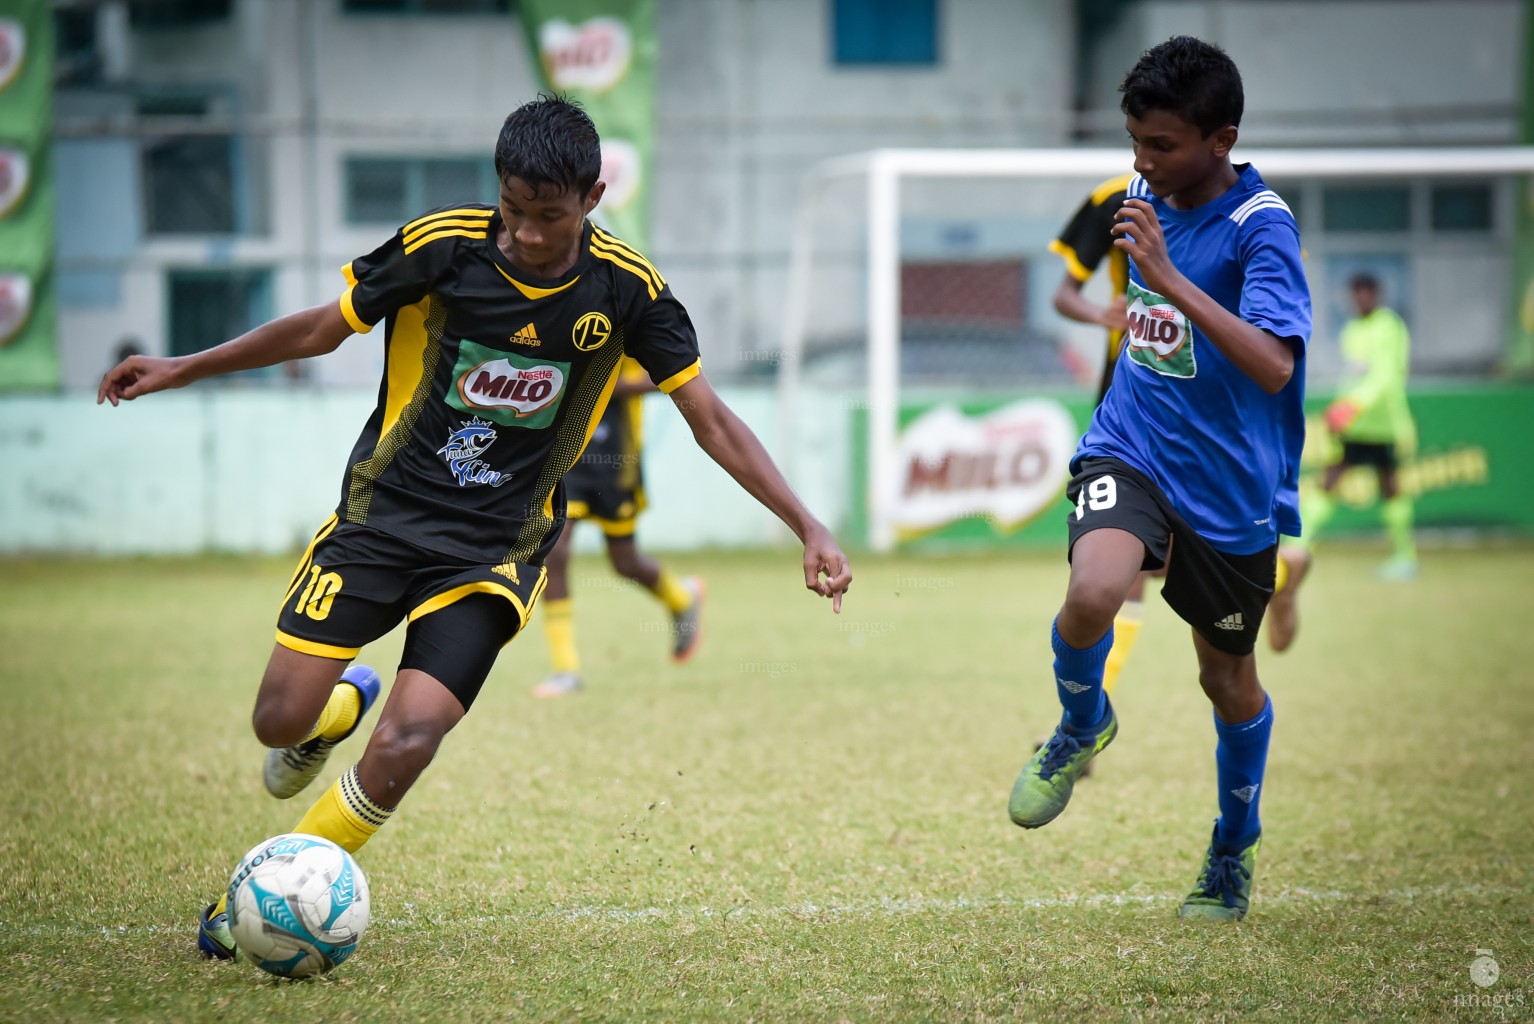 MILo Inter-school Football Tournament- Under 14 Thaajudheen vs K.Huraa School